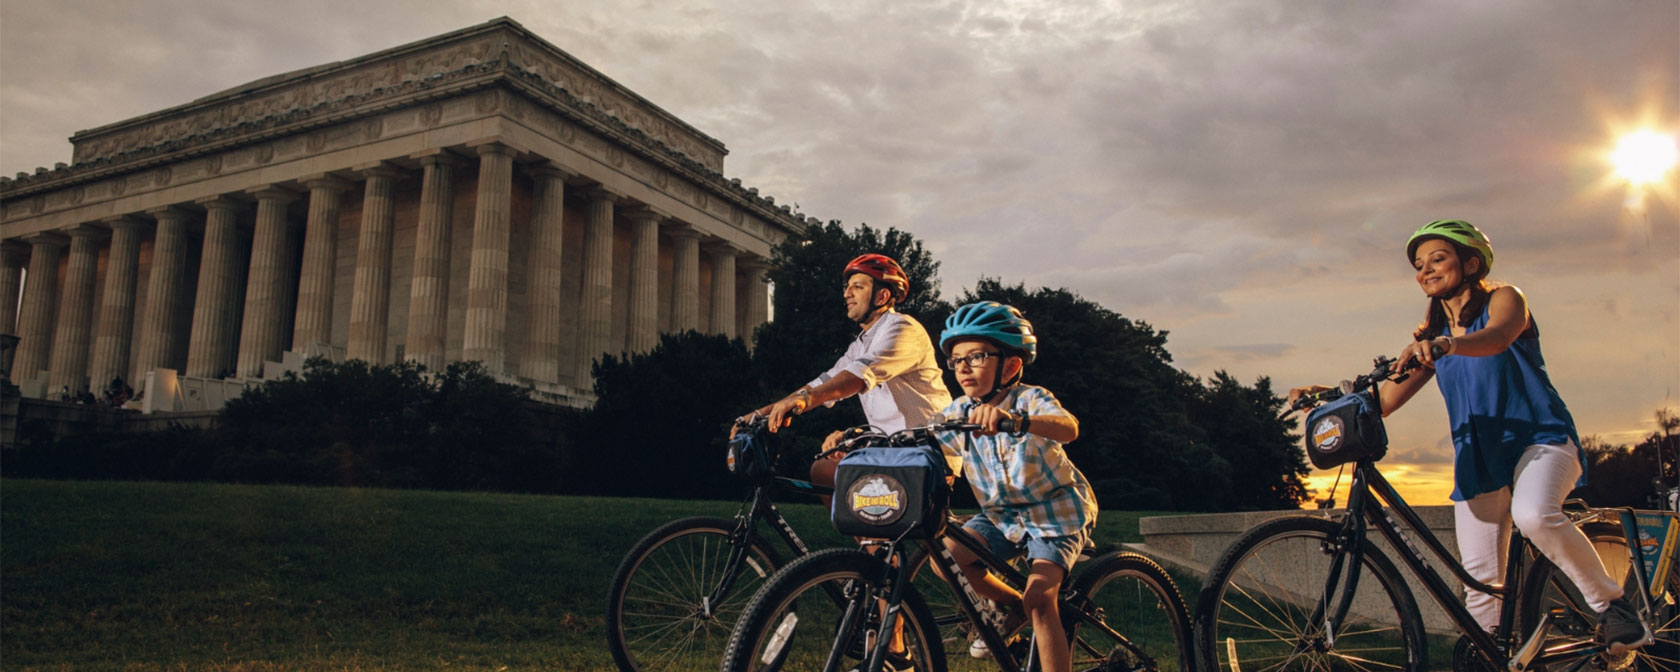 Семья на велосипеде перед мемориалом Линкольна